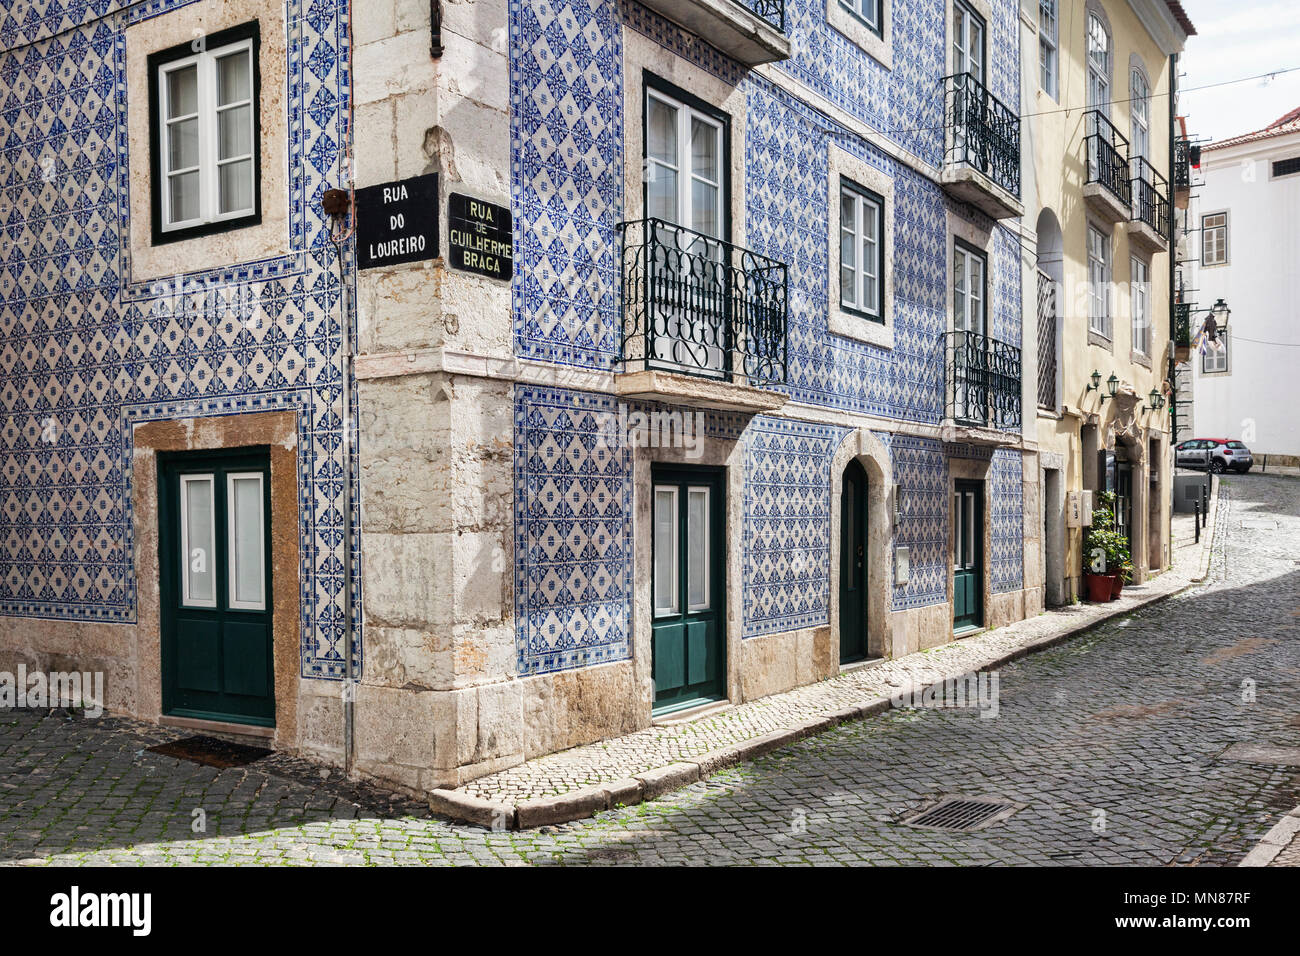 7 Marzo 2018: Lisbona, Portogallo - tradizionale con piastrelle di ceramica in casa con balconi in ferro battuto su un angolo della Rua de Loureiro e Rua de Guilherme Bra Foto Stock